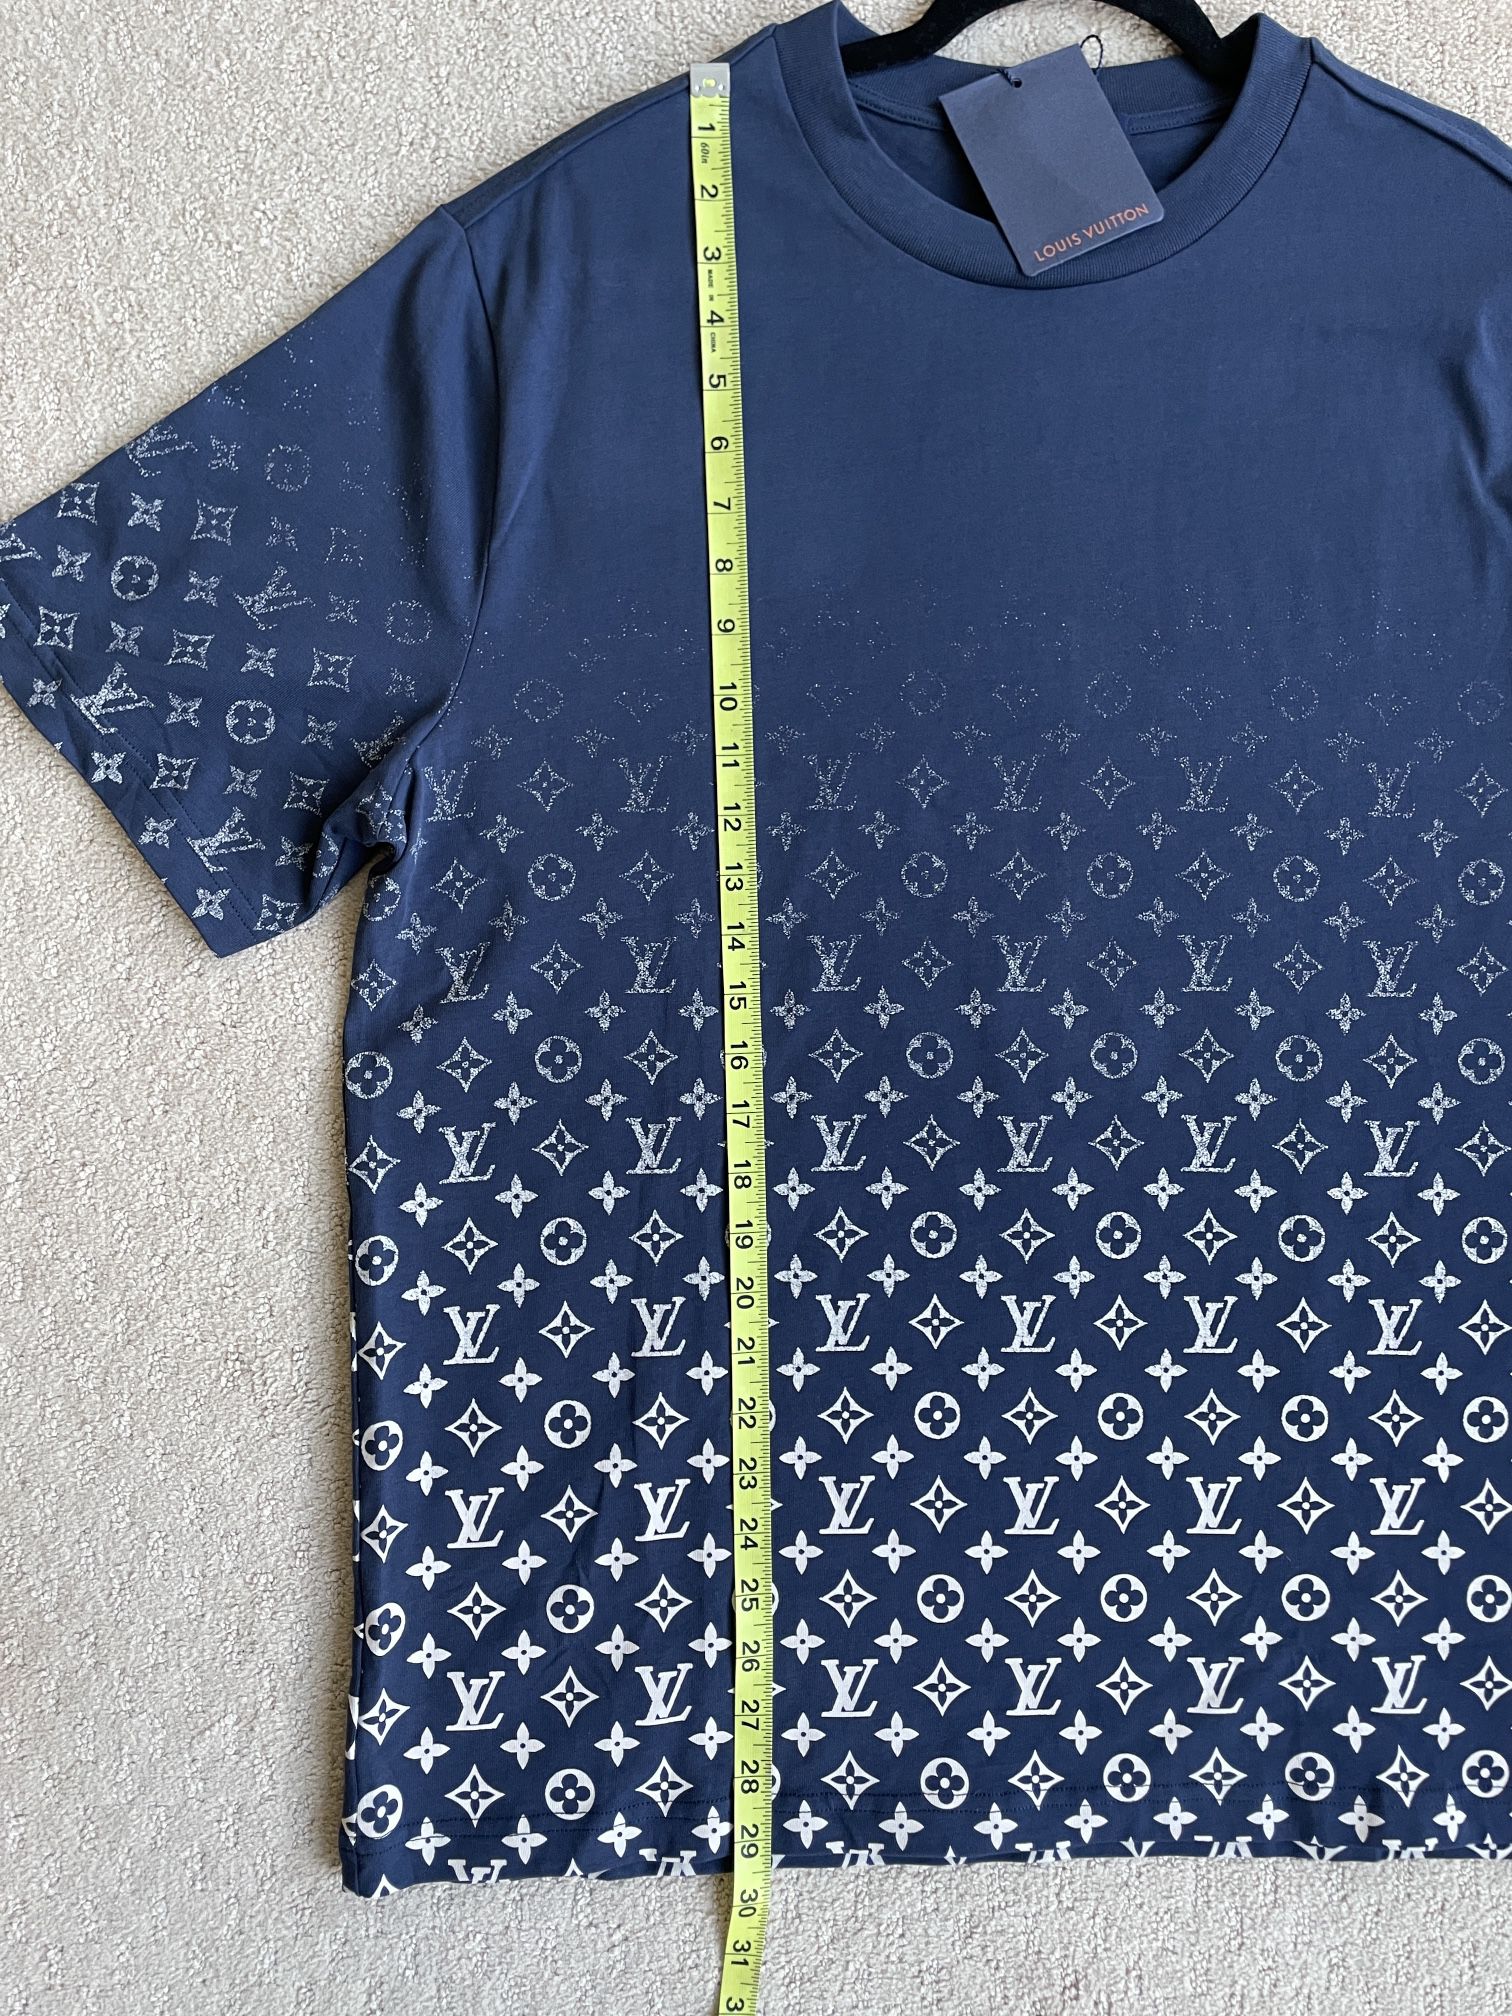 New Louis Vuitton Virgil Abloh Gradient Monogram Motif Shirt for